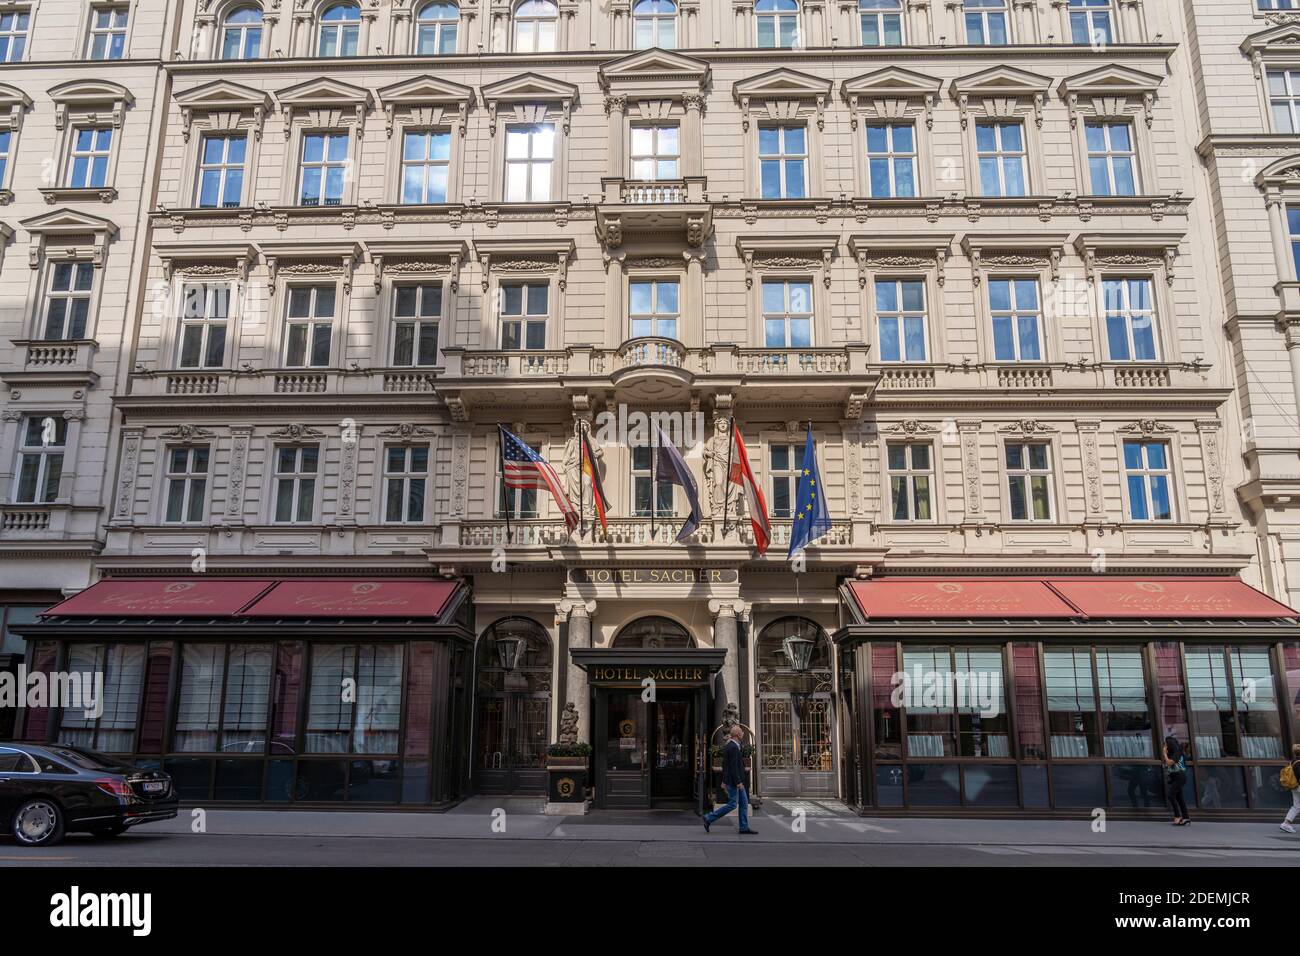 Hotel Sacher à Wien, Österreich, Europa | Hotel Sacher, Vienne, Autriche, Europe Banque D'Images